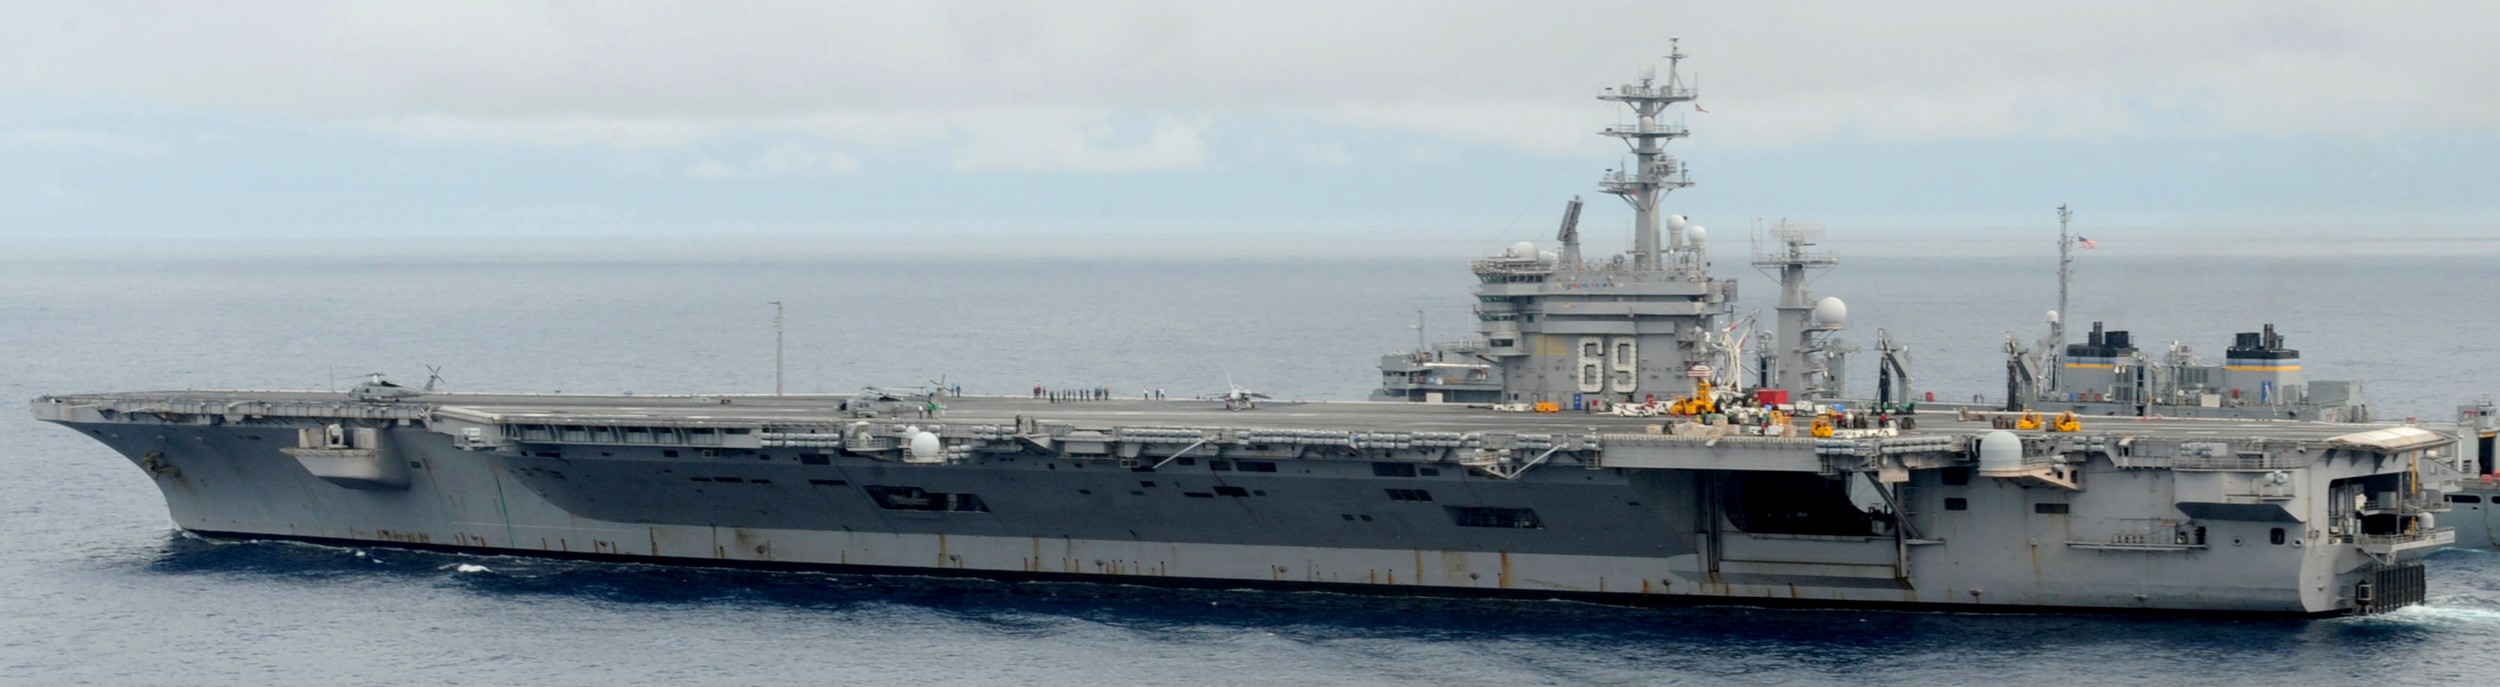 uss dwight d. eisenhower cvn-69 aircraft carrier 2011 143